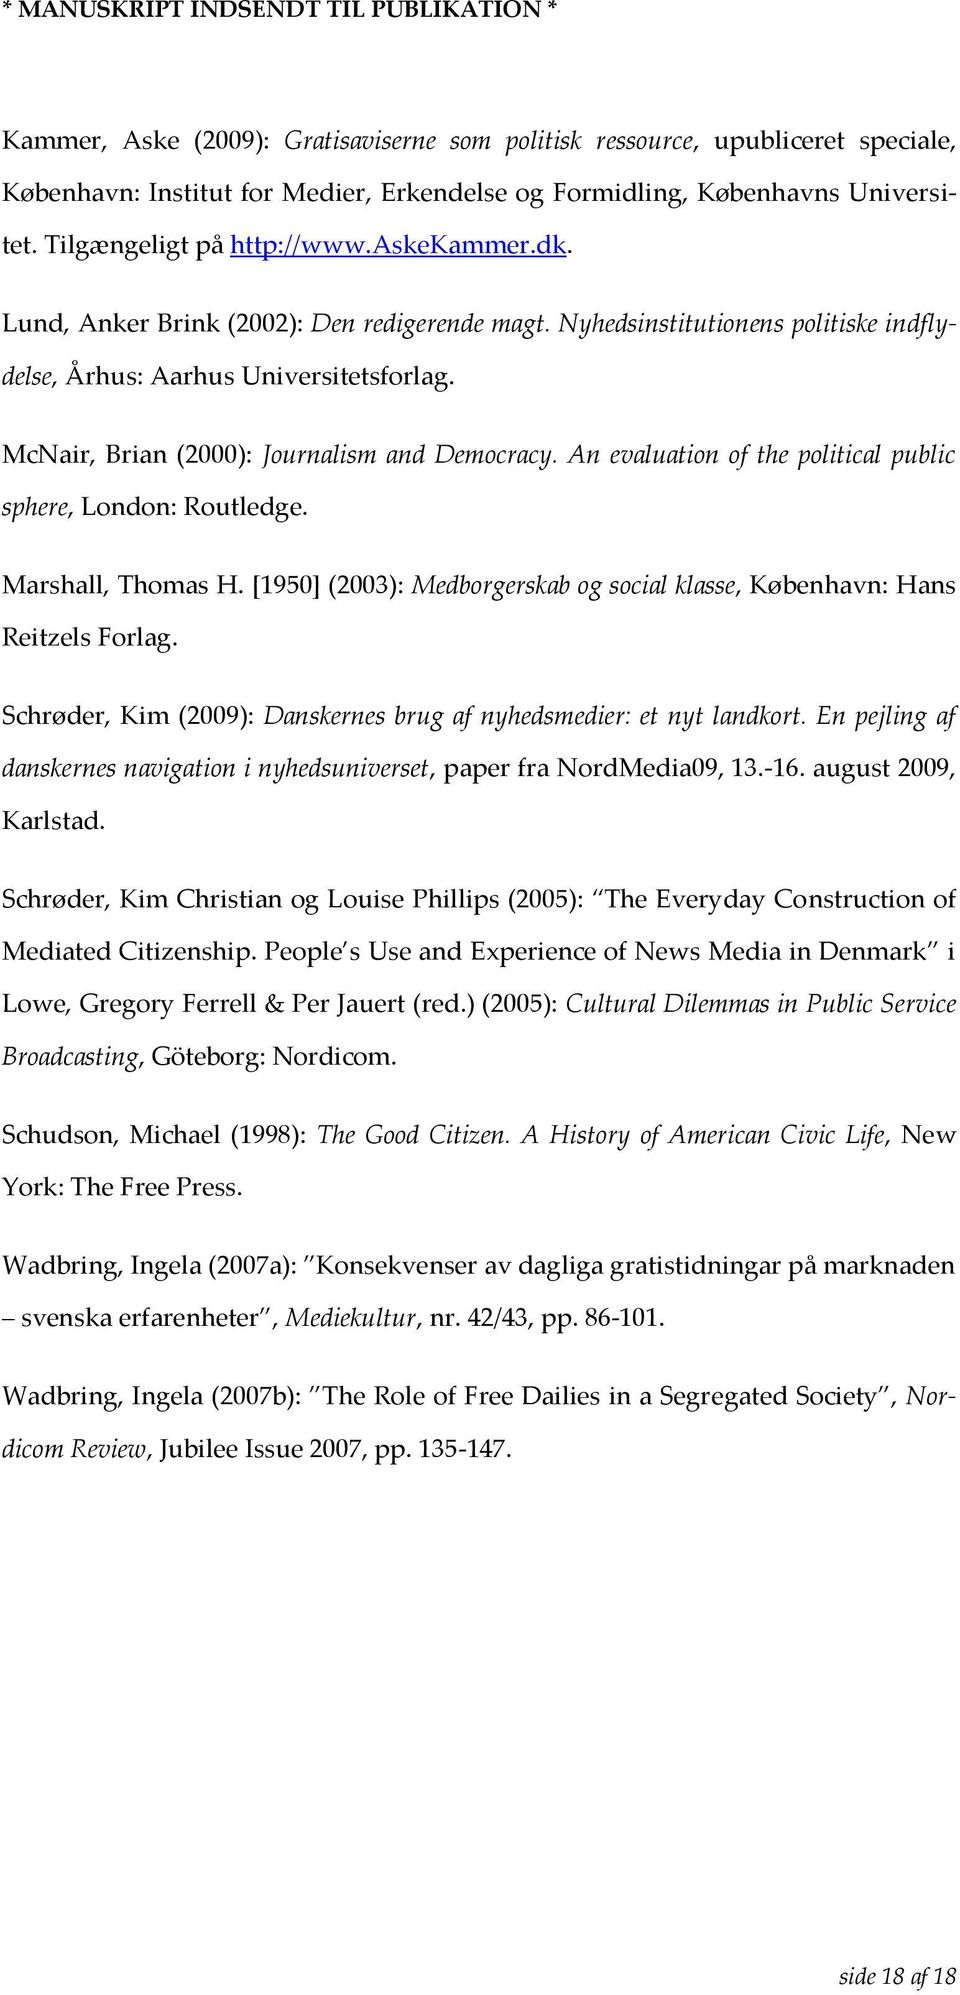 An evaluation of the political public sphere, London: Routledge. Marshall, Thomas H. [1950] (2003): Medborgerskab og social klasse, København: Hans Reitzels Forlag.